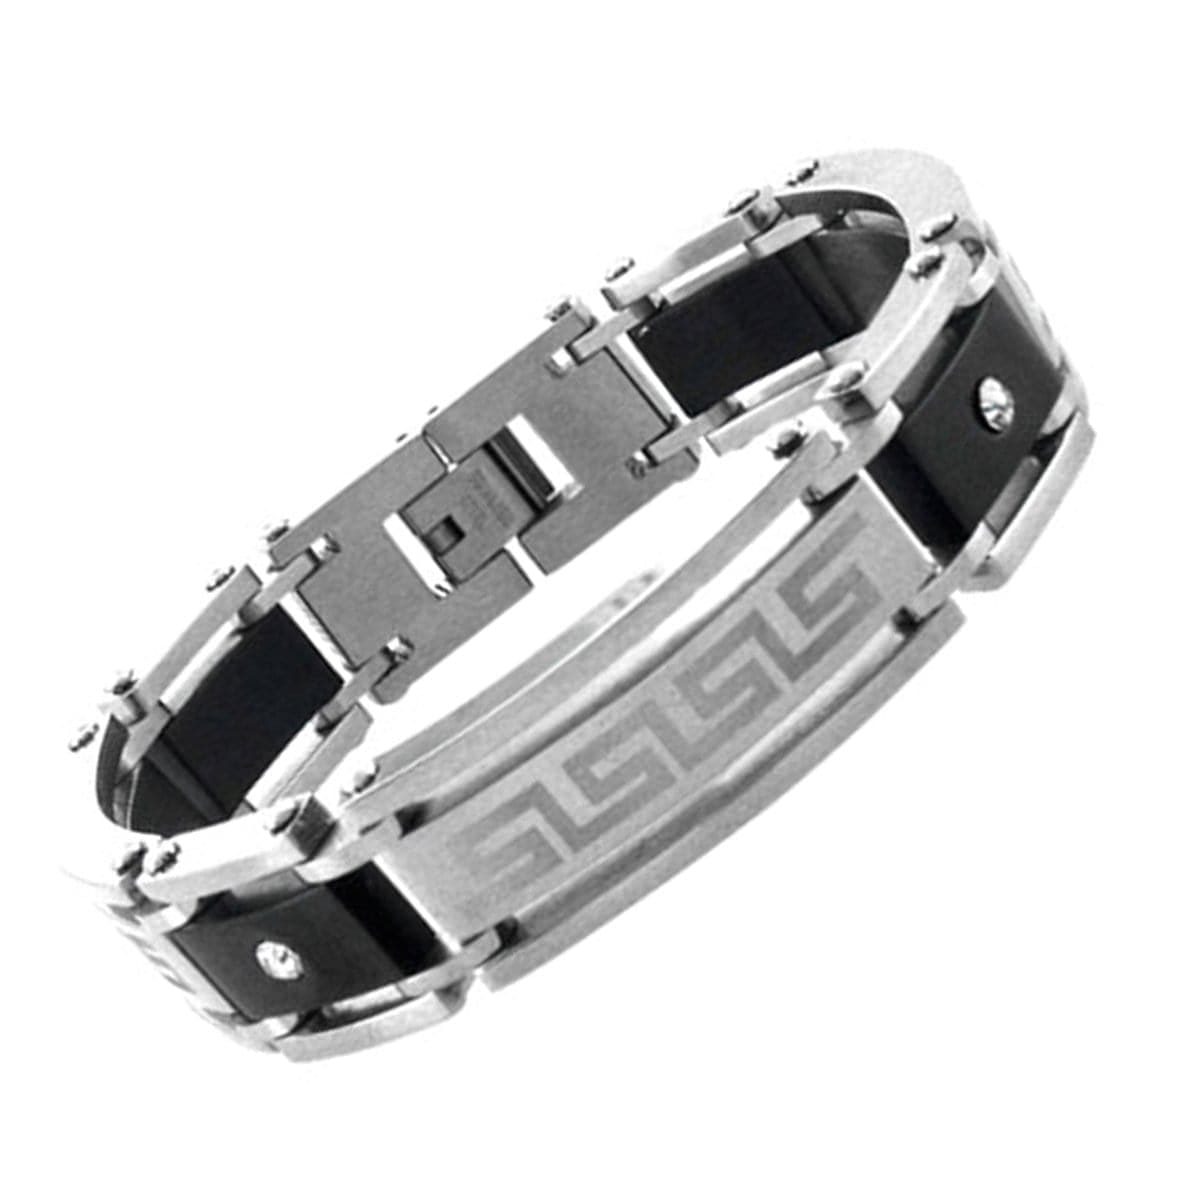 INOX JEWELRY Bracelets Black and Silver Tone Stainless Steel Greek Key Pattern with CZ Bracelet BR2484